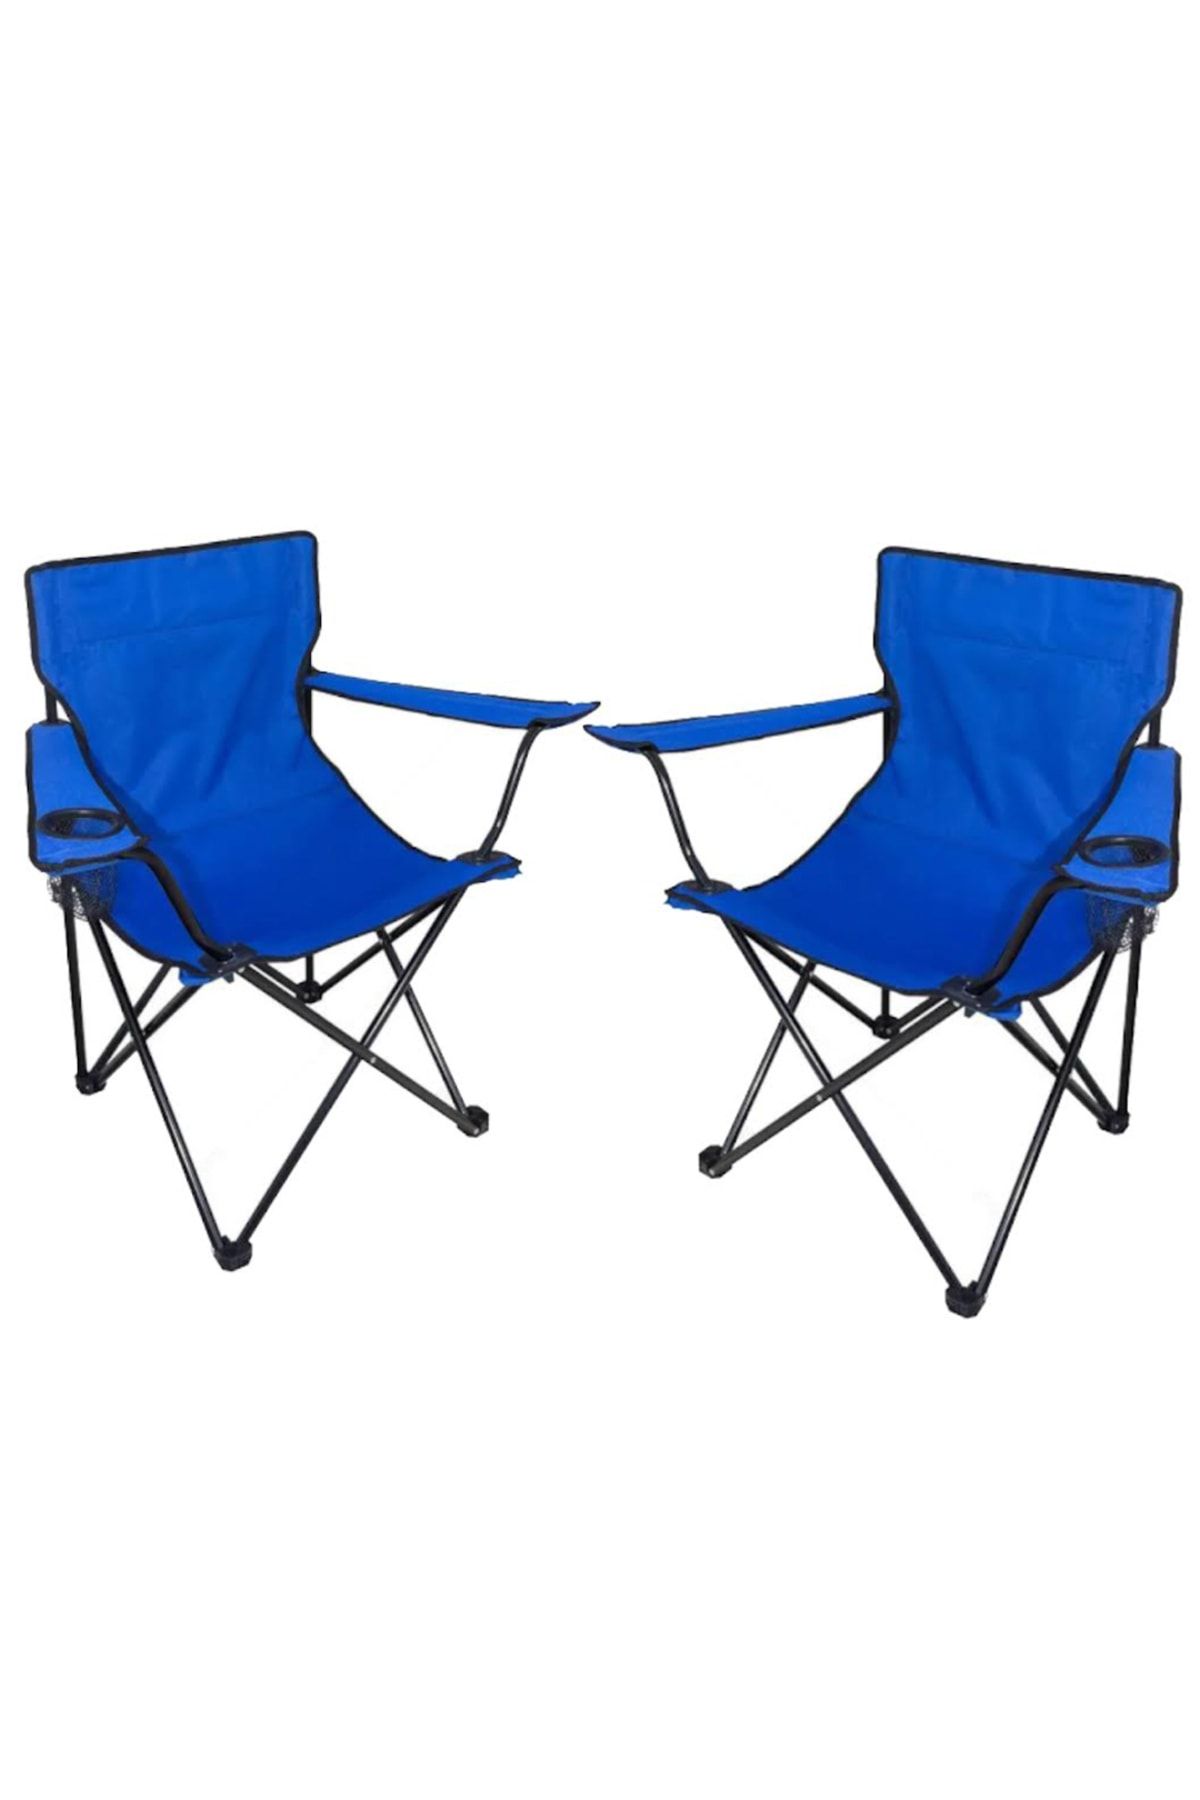 Tedarikcenter 2 Adet Kamp Sandalyesi Katlanır Sandalye Bahçe Koltuğu Piknik Plaj Balkon Sandalyesi-mavi